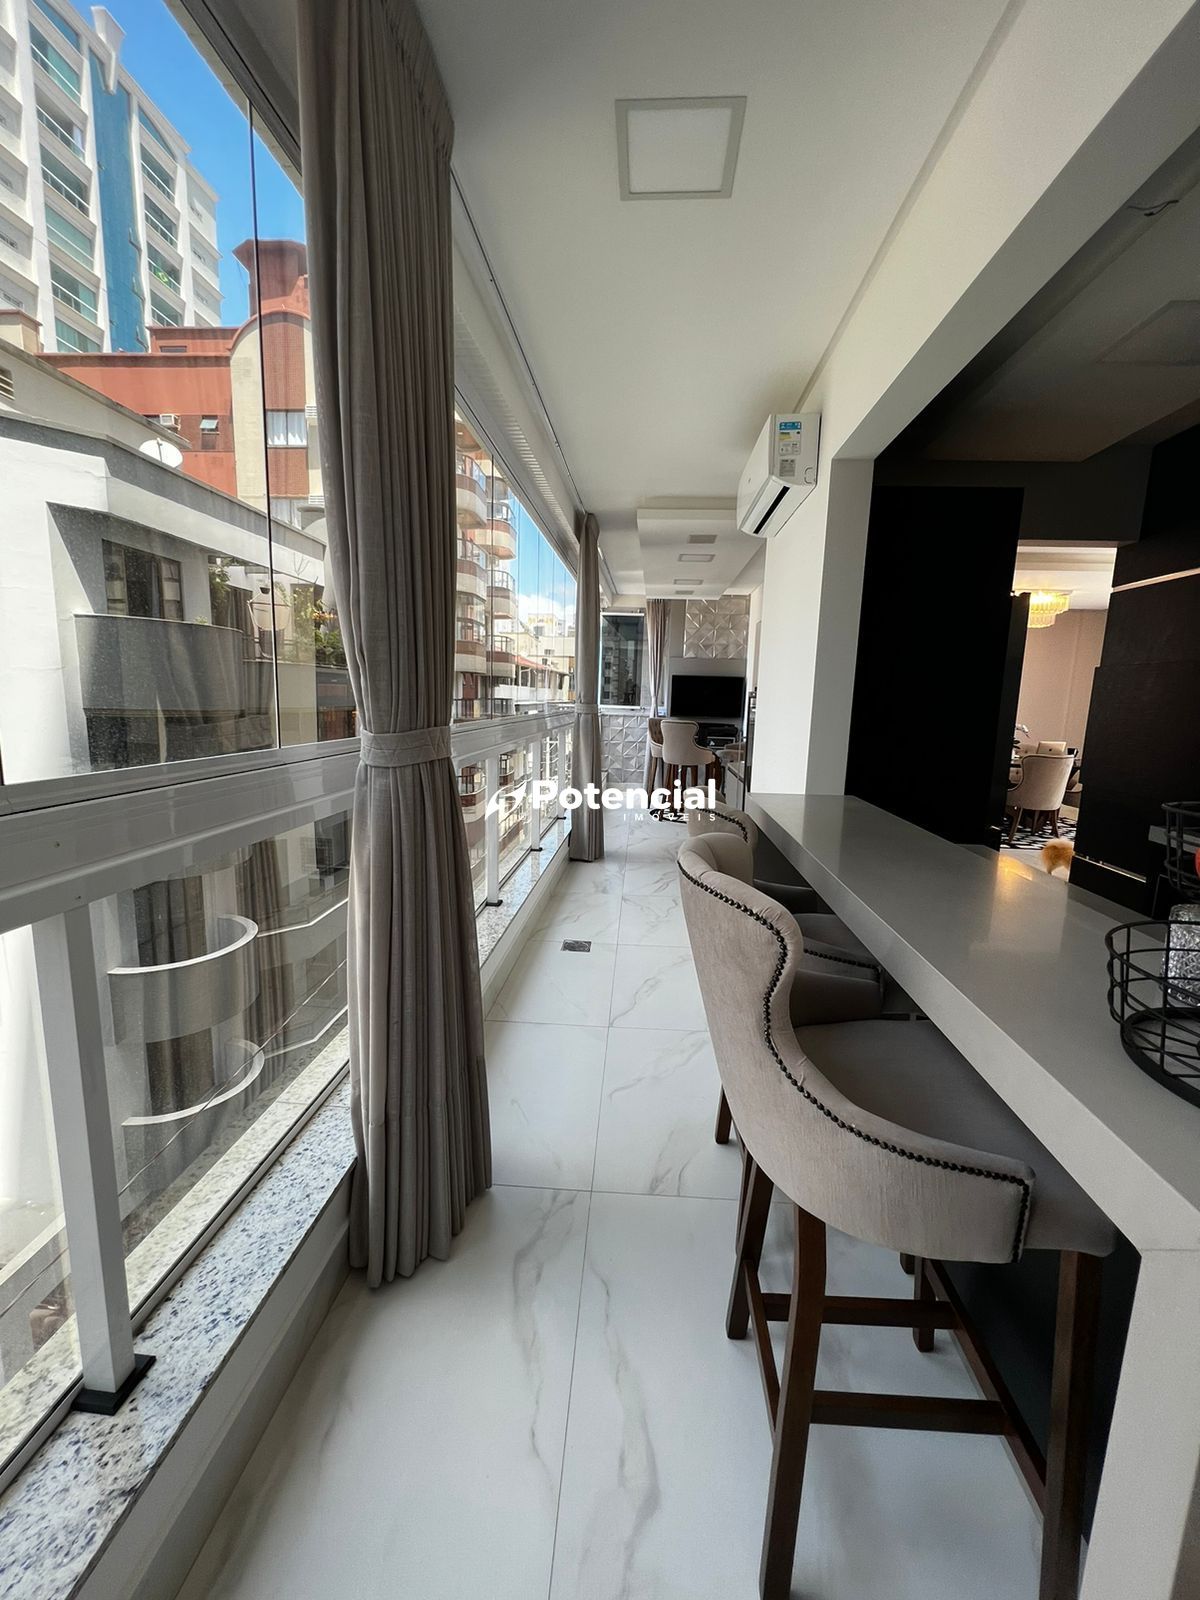 Imagem de Apartamento 3 suítes com terraço | Meia Praia - Itapema/SC | Potencial Imóveis